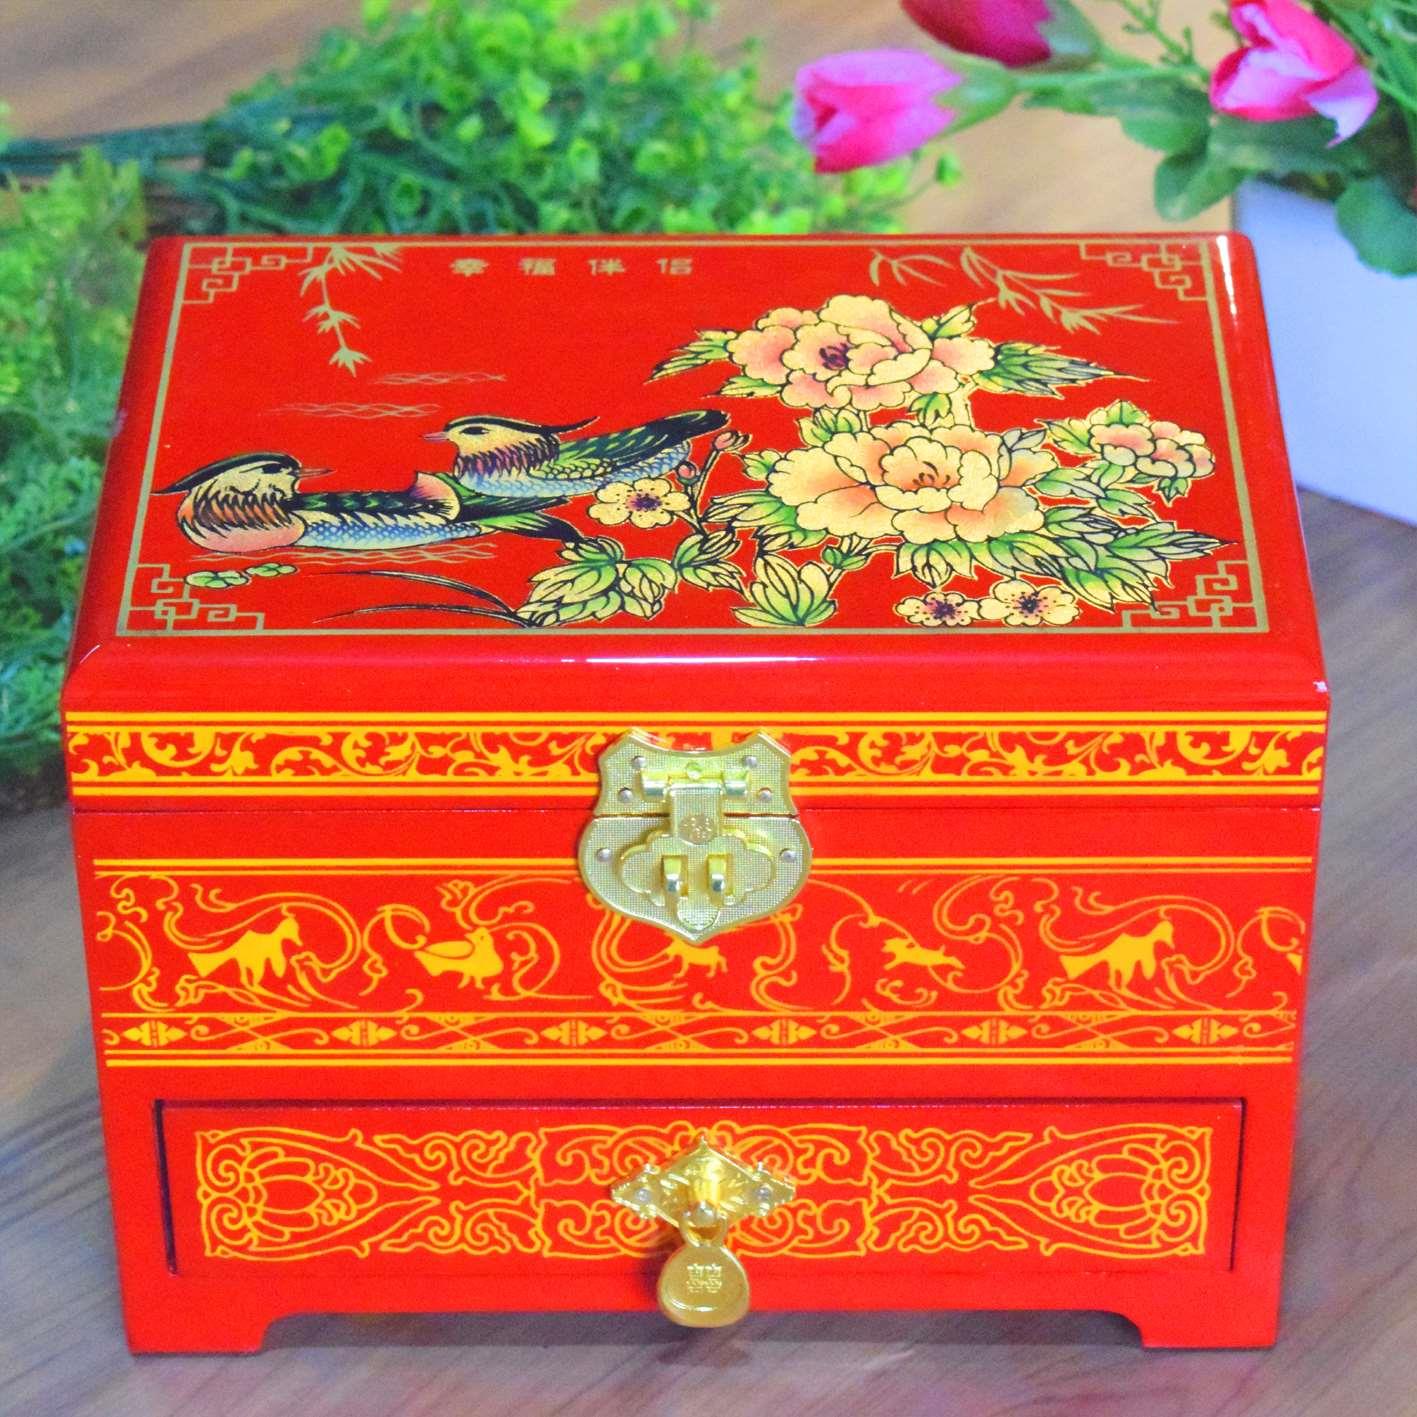 正品平遥推光漆器首饰盒结婚礼物木质中国风梳妆盒中式古高档复古